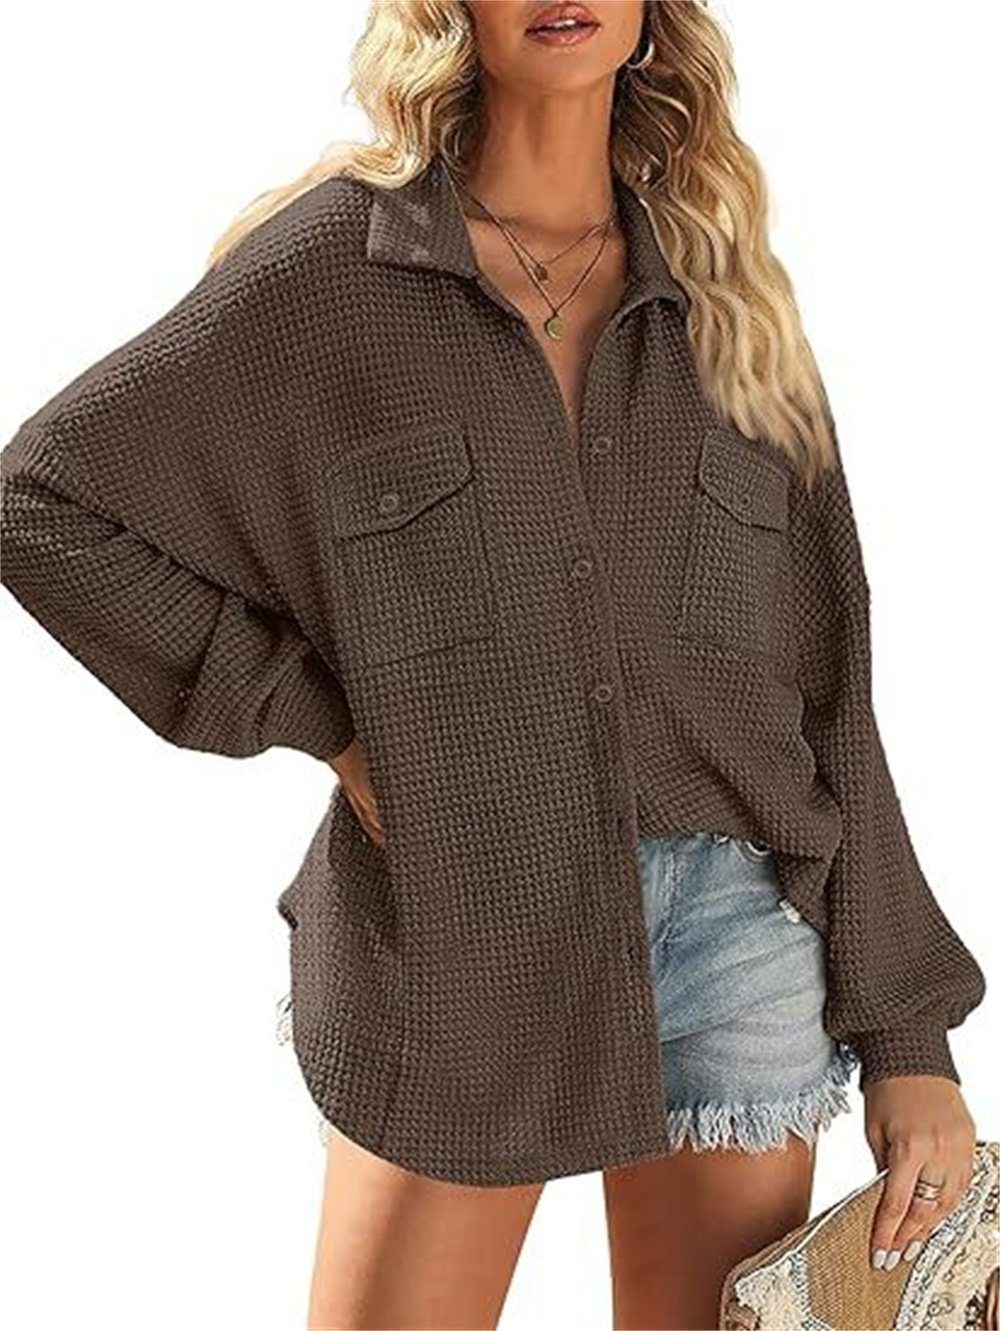 Geknöpftes Shirt gestrickt B.X Strickjacke V-Ausschnitt Damen lässiges Wirkmantel Top übergroßes mit Brusttasche braun Jacke langärmeliges Mantel Waffel